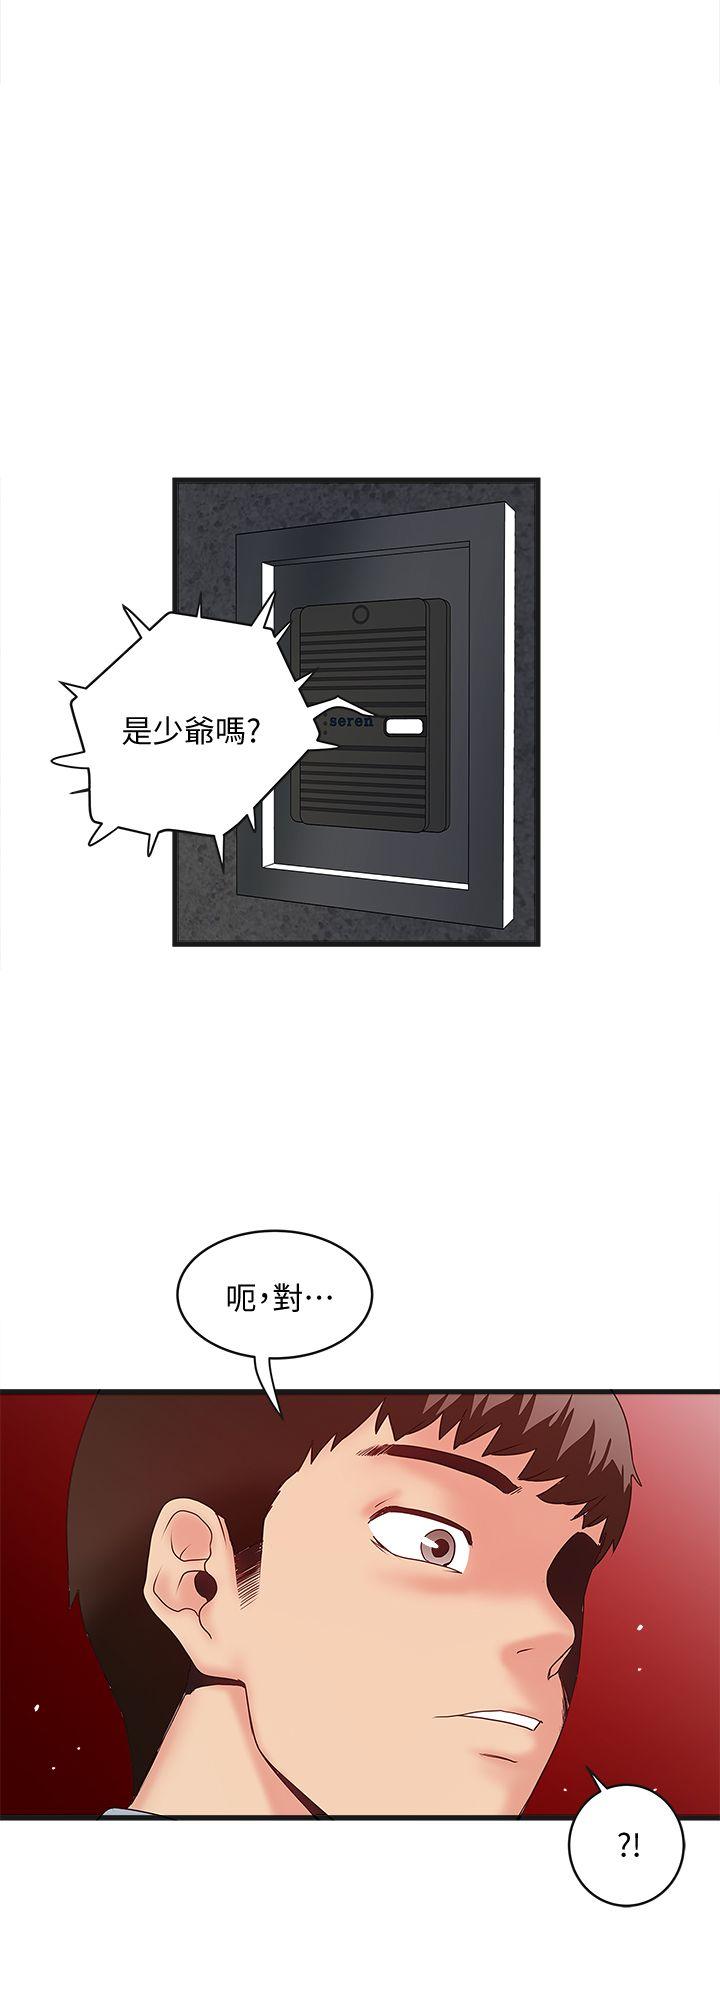 韩国污漫画 下女,初希 第4话-意外的画面 27